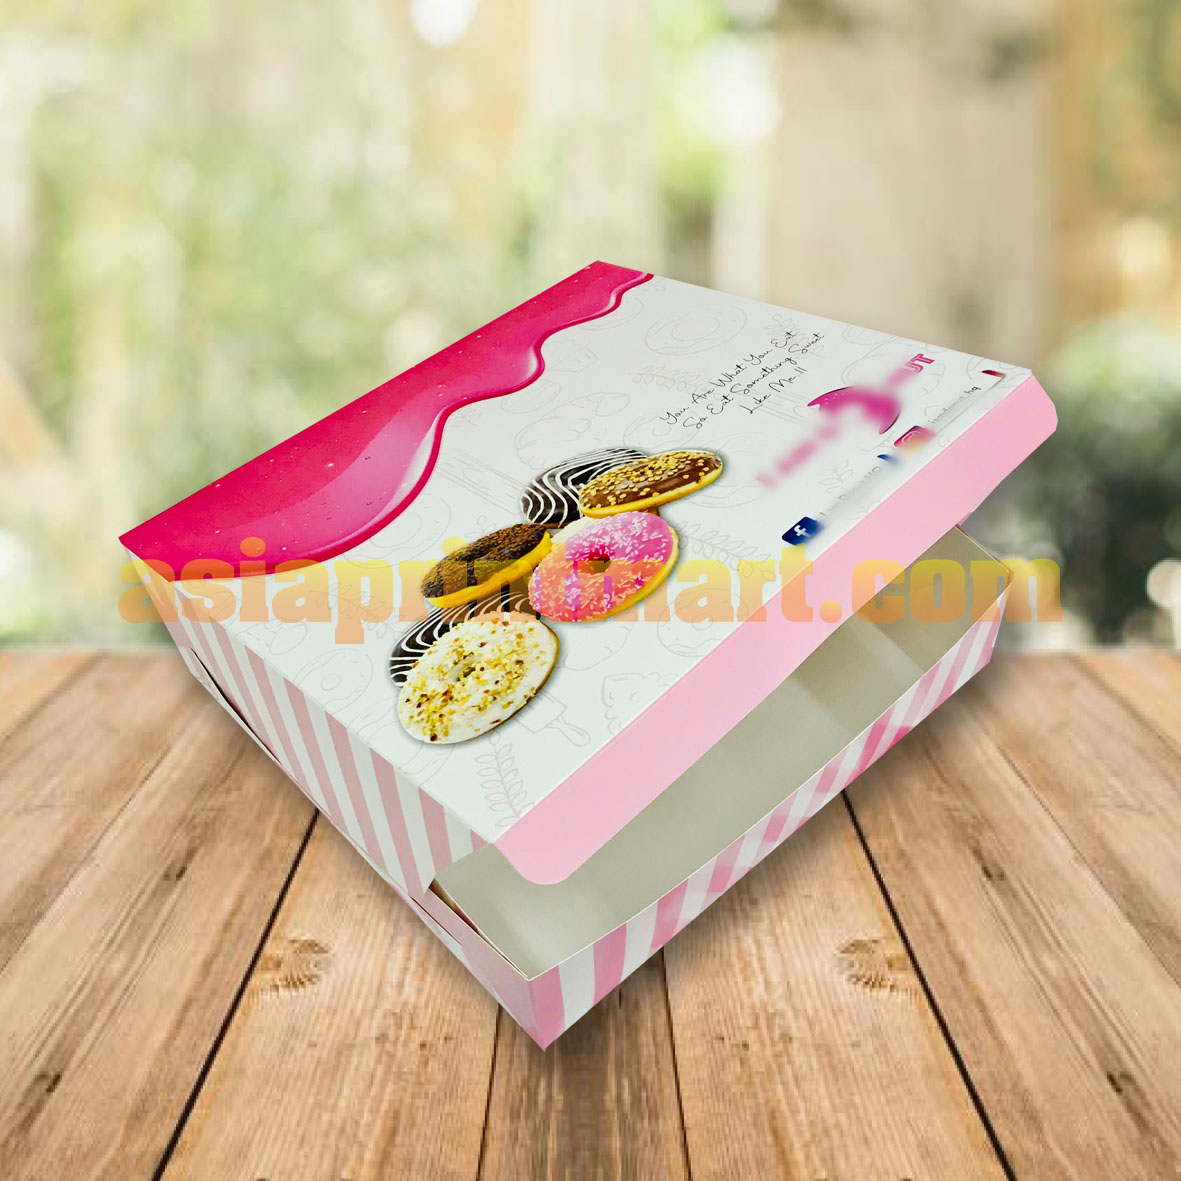 print smple box, print cookies box, cetak murah kotak raya, cetak kotak biskut, cetak ketak kek, print cheap cake box,food box printer,